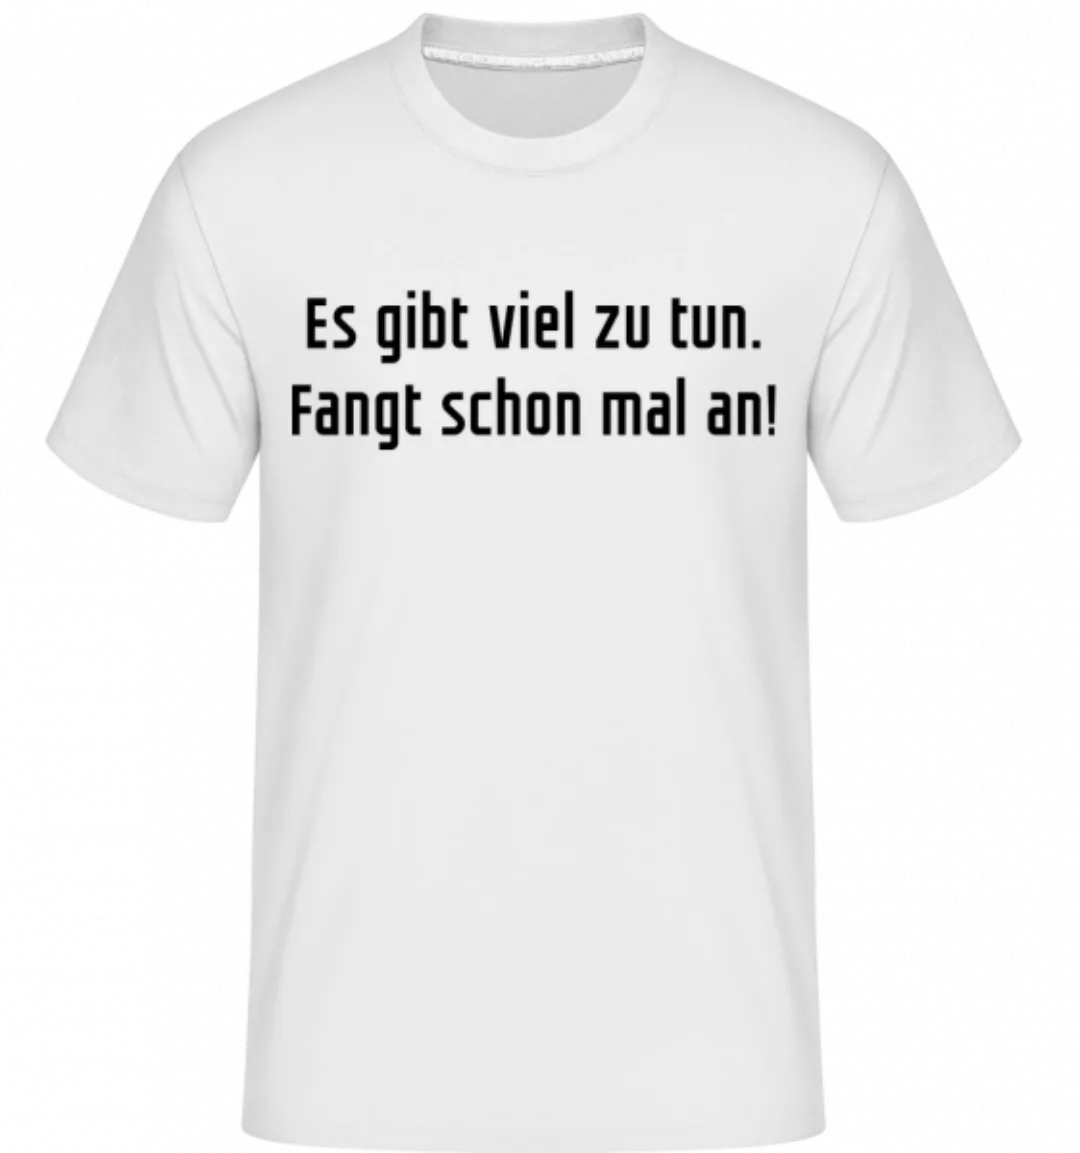 Es Gibt Viel Zu Tub Fangt Schonmal An · Shirtinator Männer T-Shirt günstig online kaufen